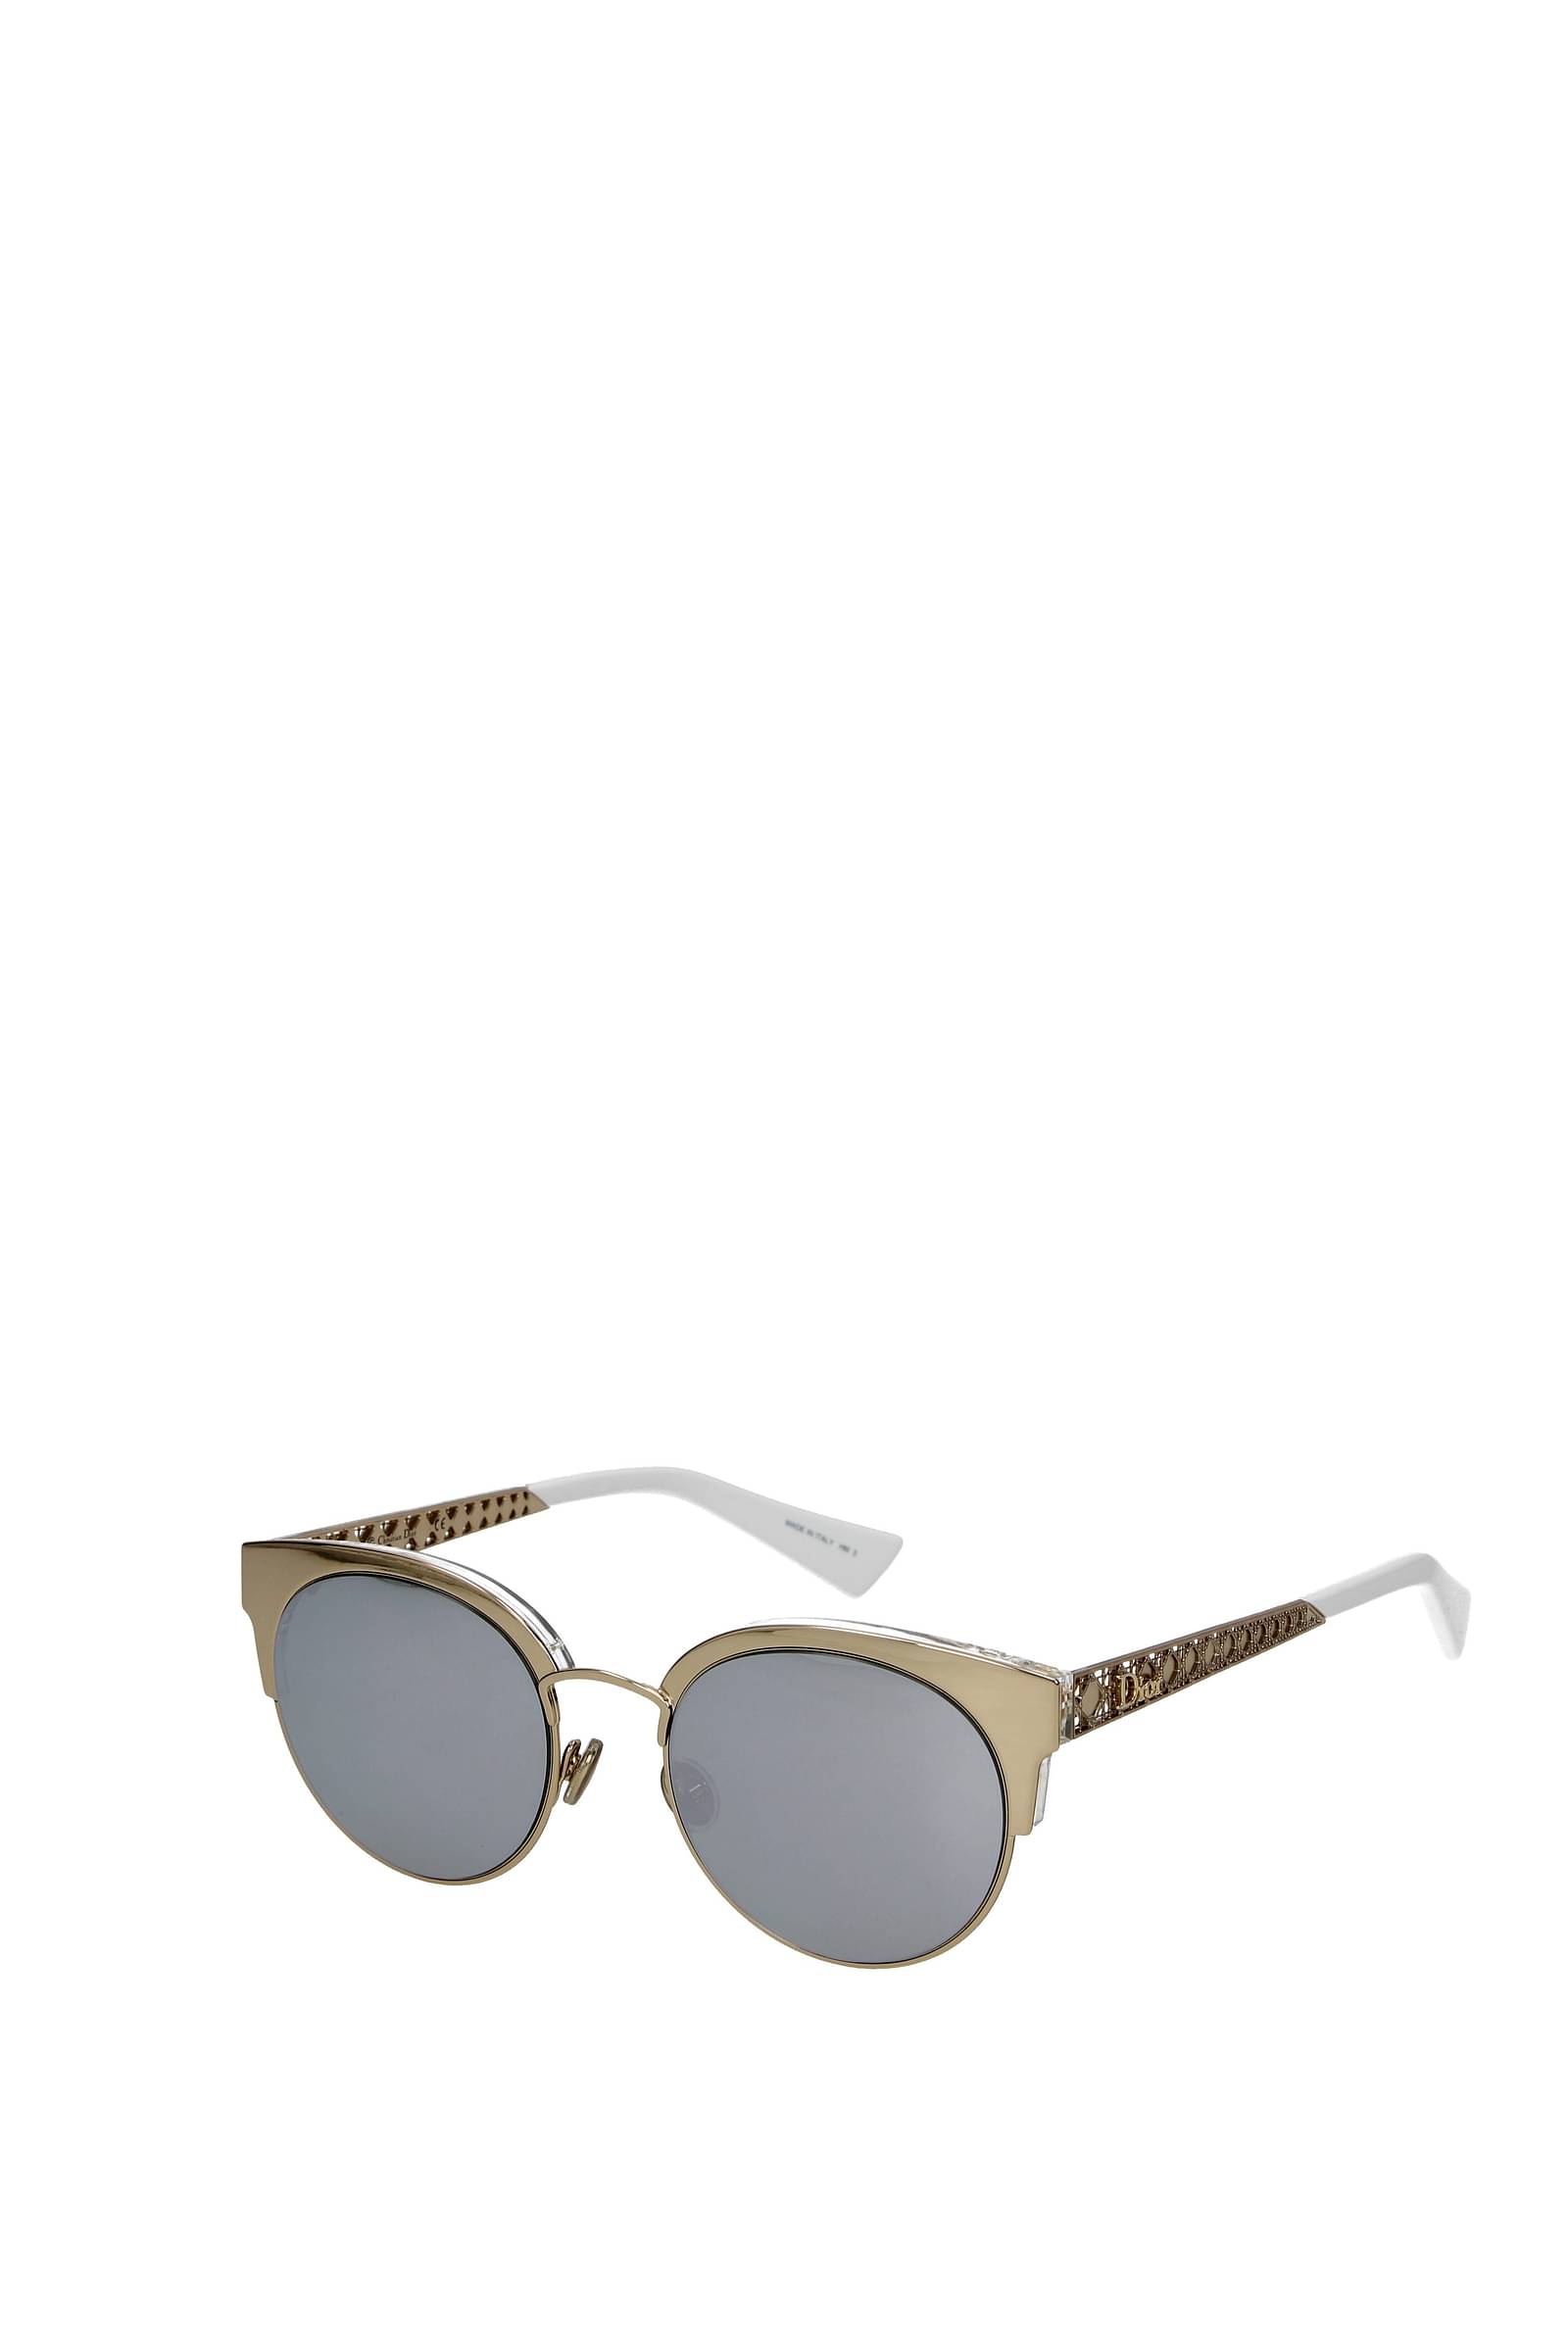 Dior  Sunglasses  Dior0211S  Gold  Dior Eyewear  Avvenice